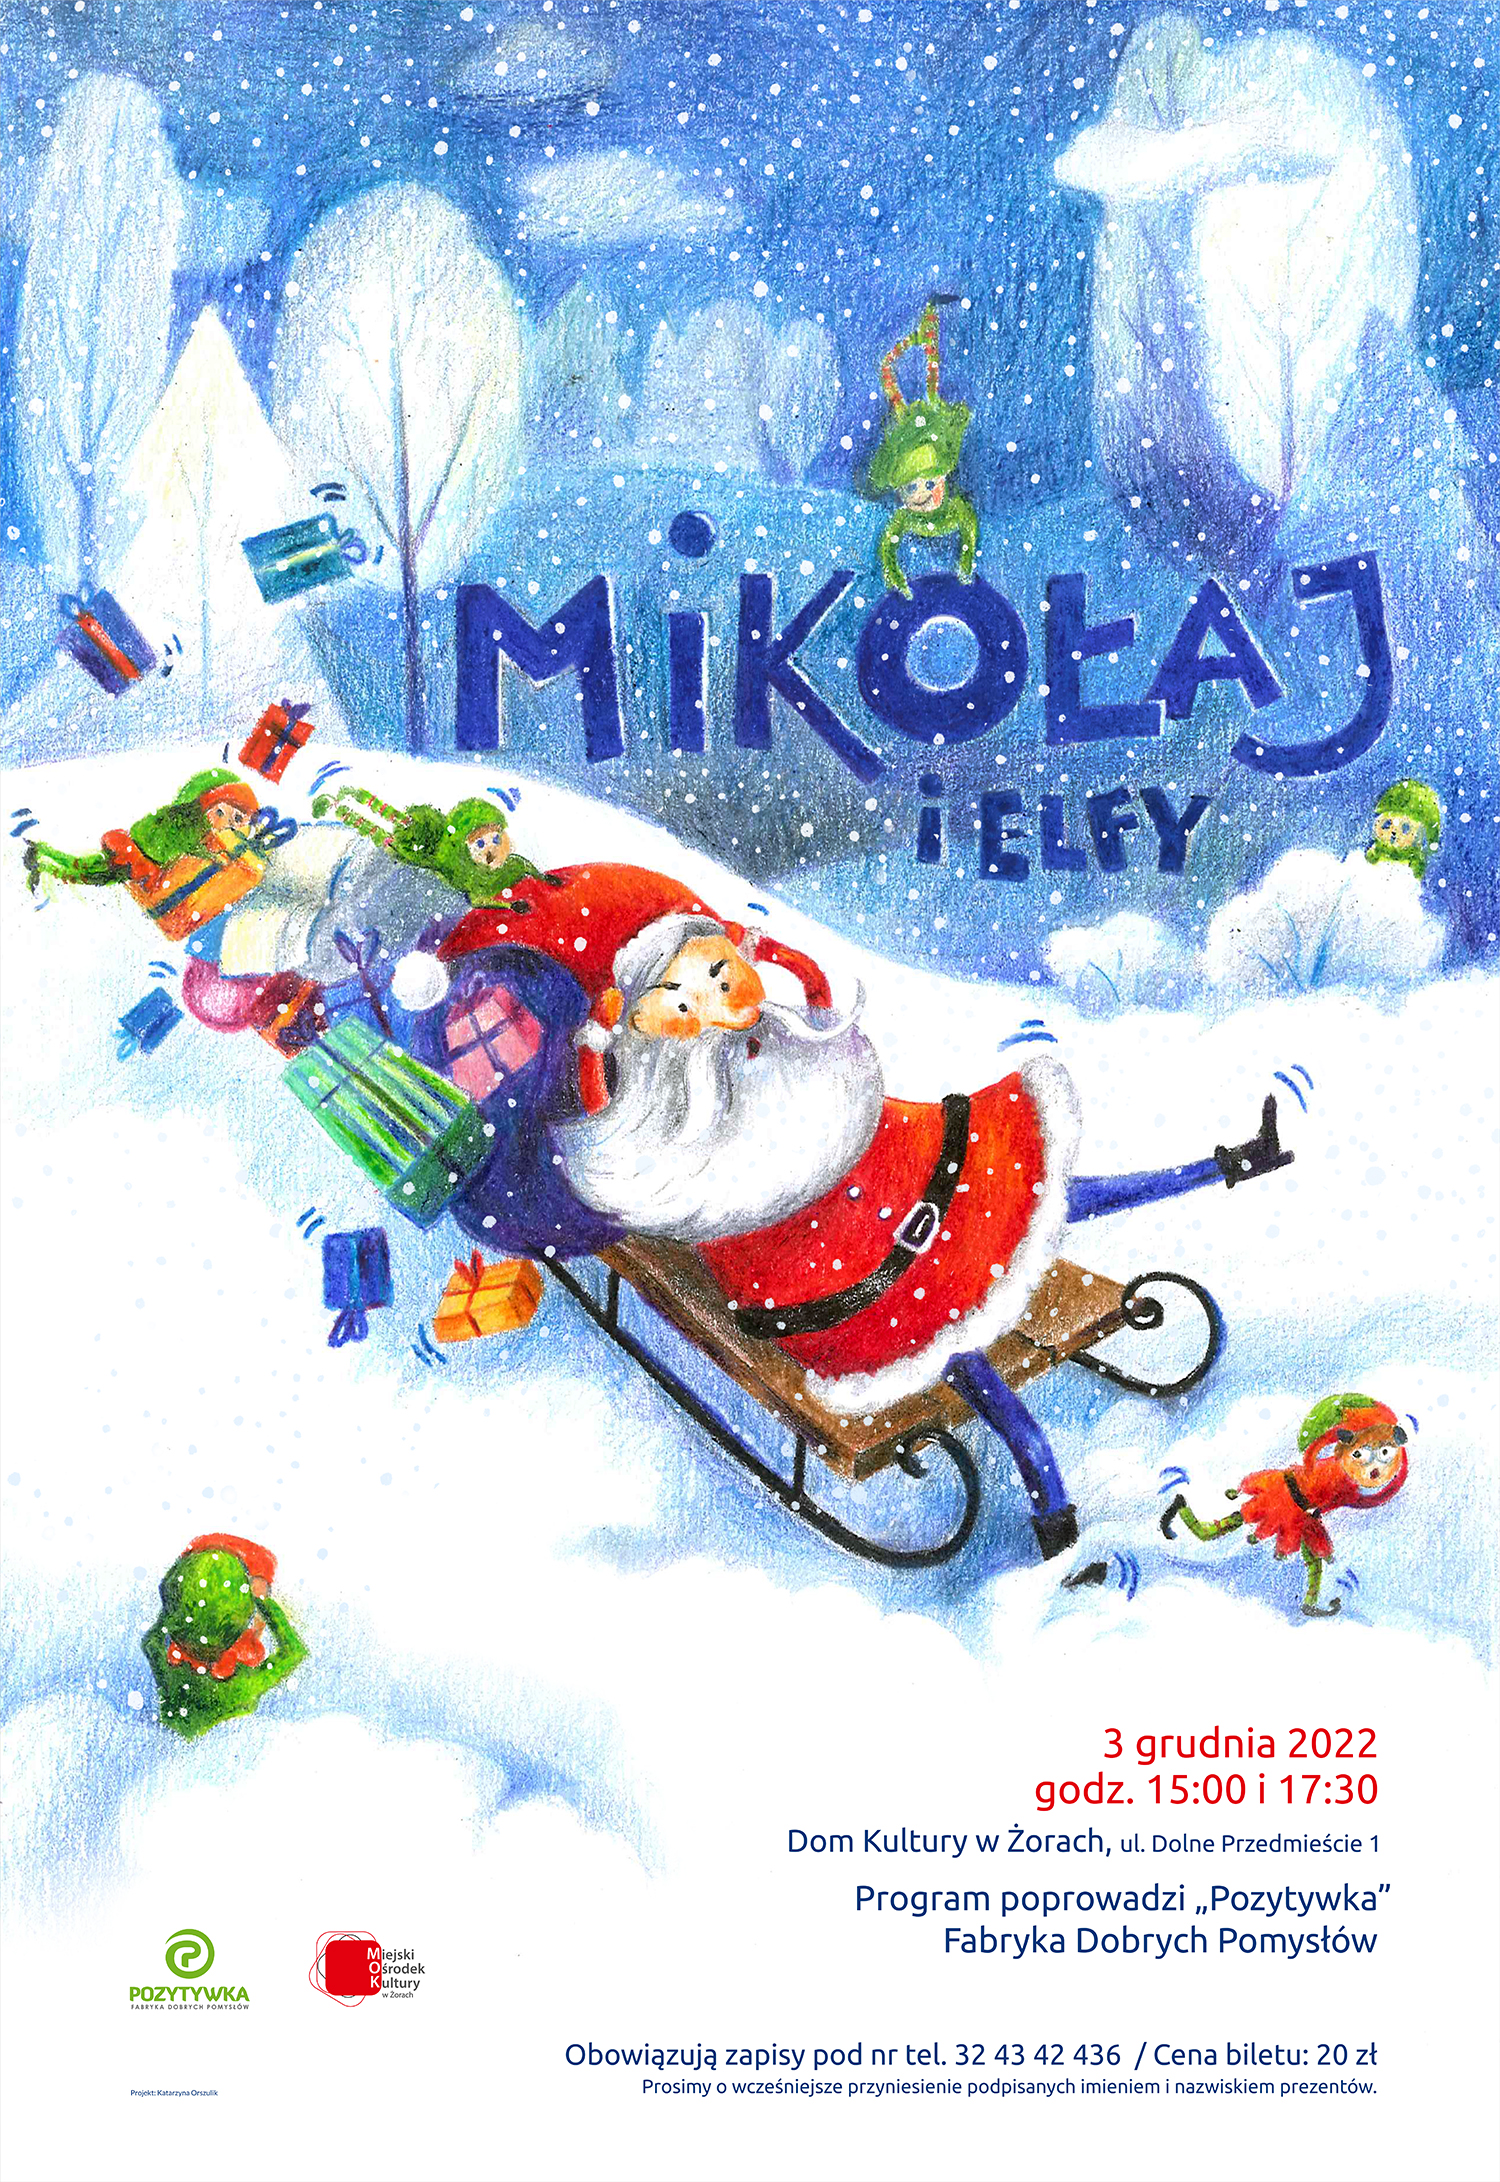 kolorowy rysunek zimowej scenerii z padającym śniegiem, Mikołajem i elfami